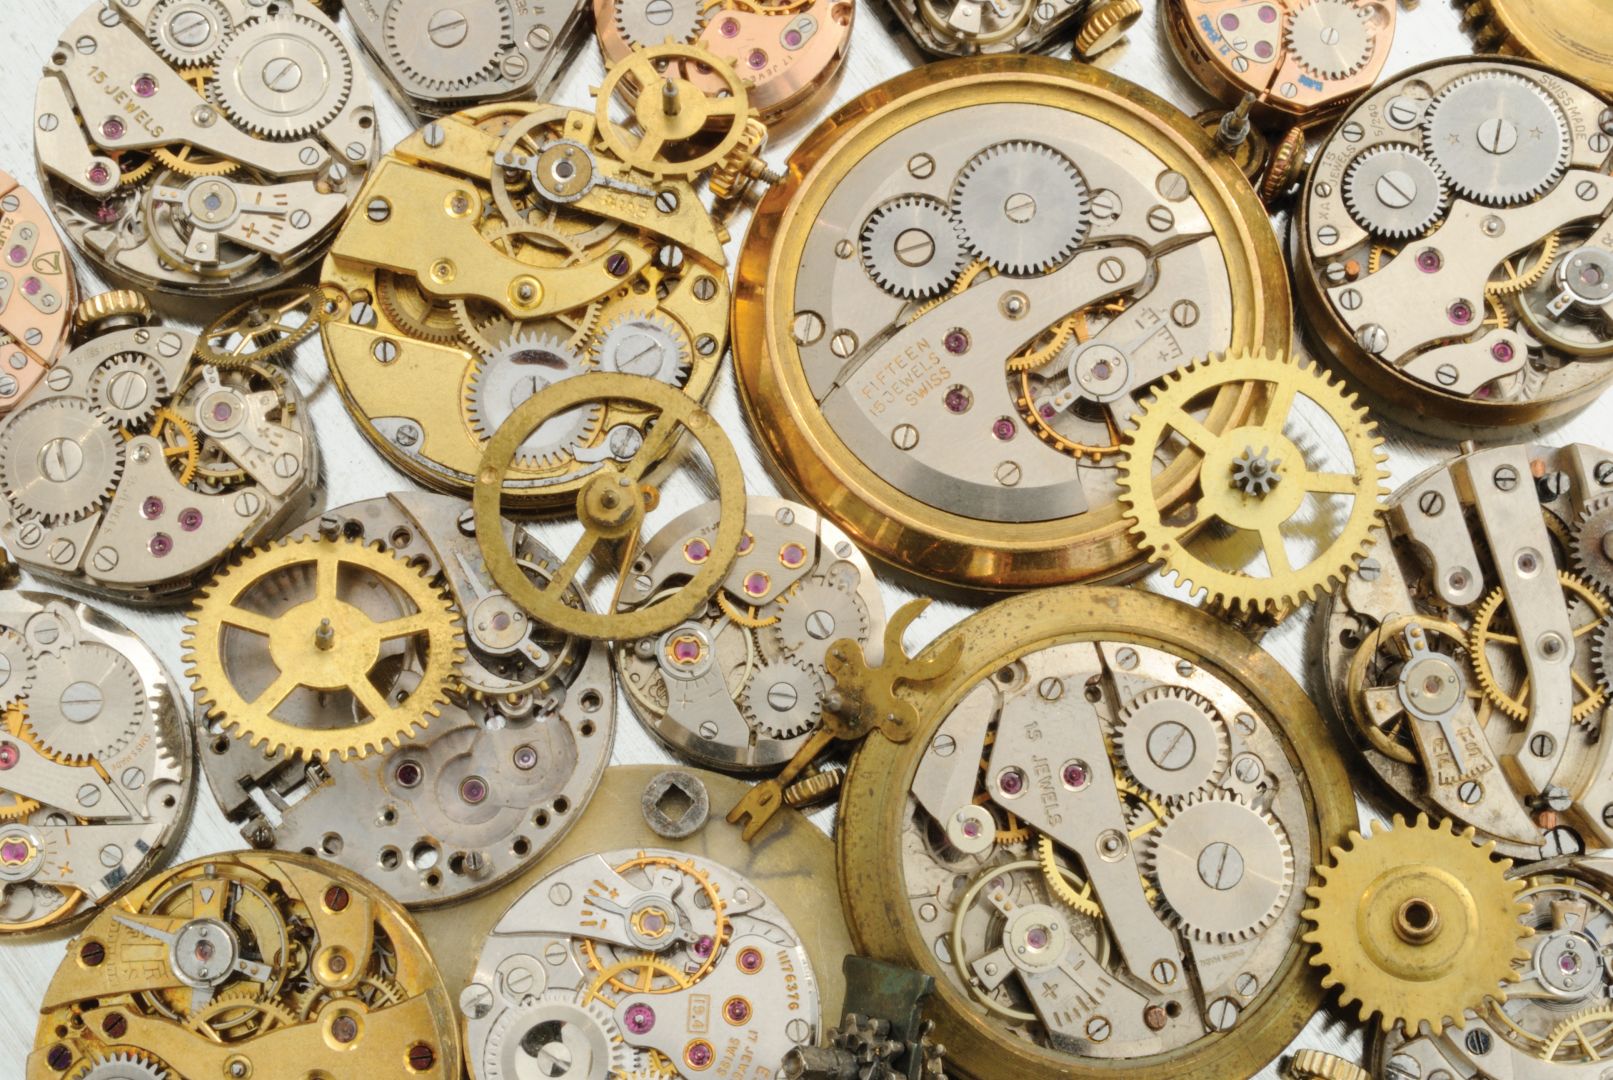 Poptávka na výrobce či dodavatel šperků pro globální prodej (Šperky, hodinky, bižuterie) - Prostějov